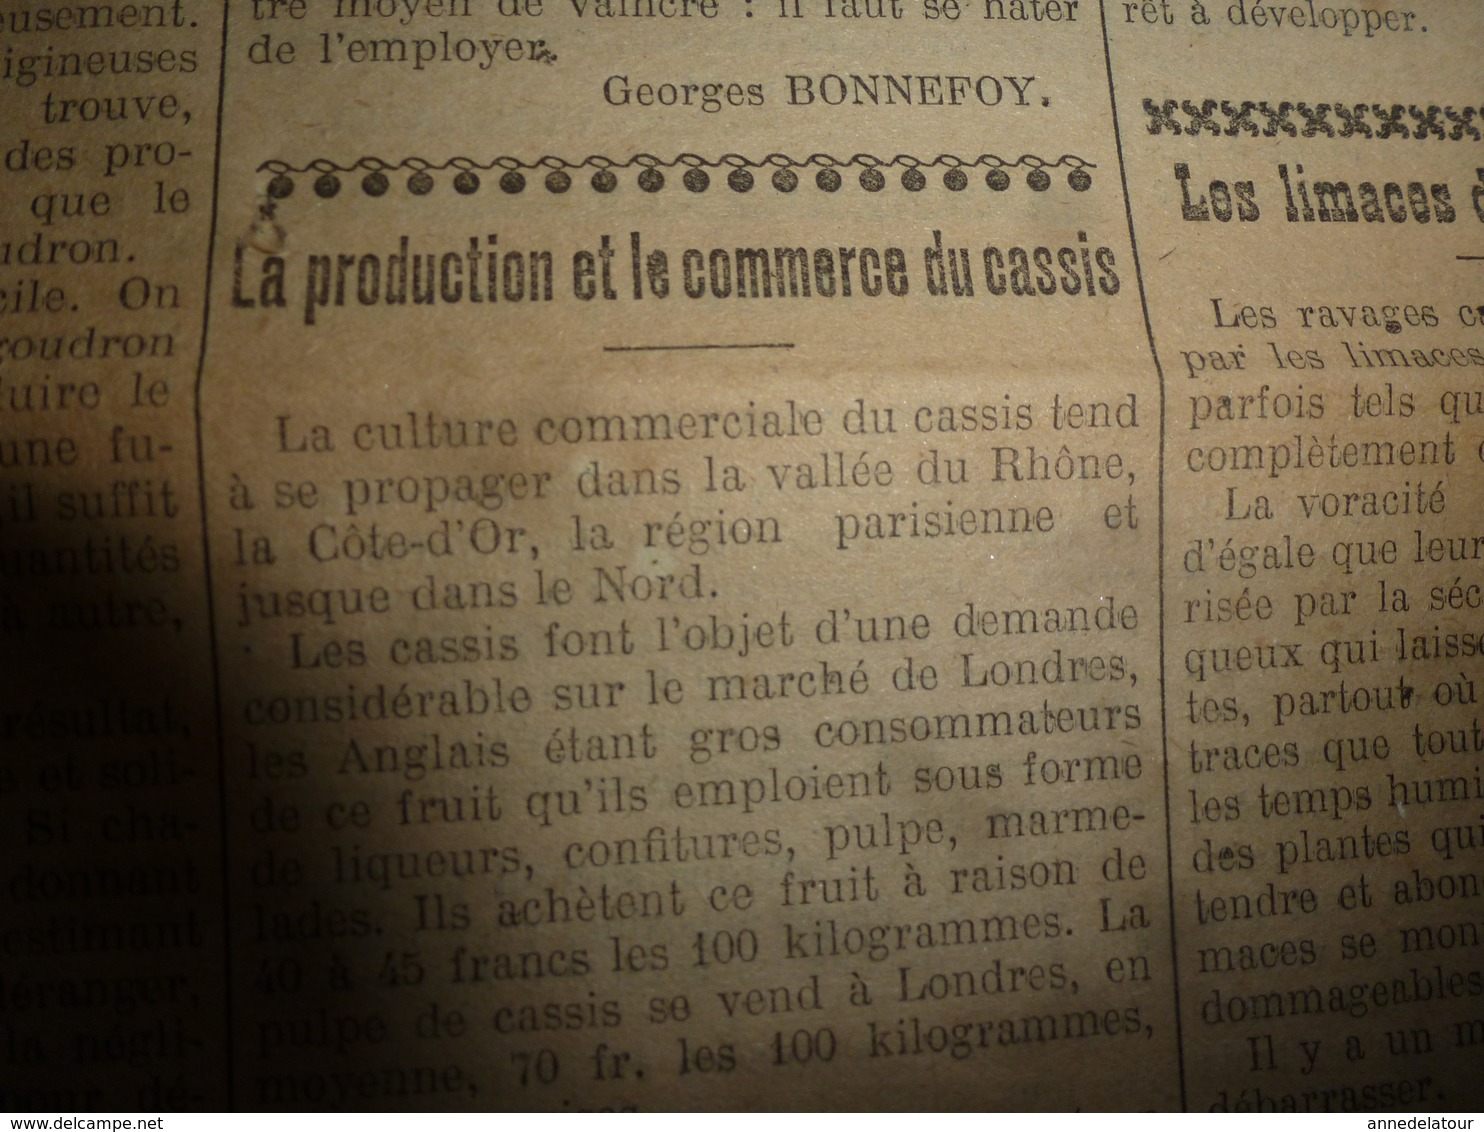 1914 L'AMI DU CULTIVATEUR-->La viande frigorifiée;La production et commerce du cassis;Comment faire un bœuf gras;etc